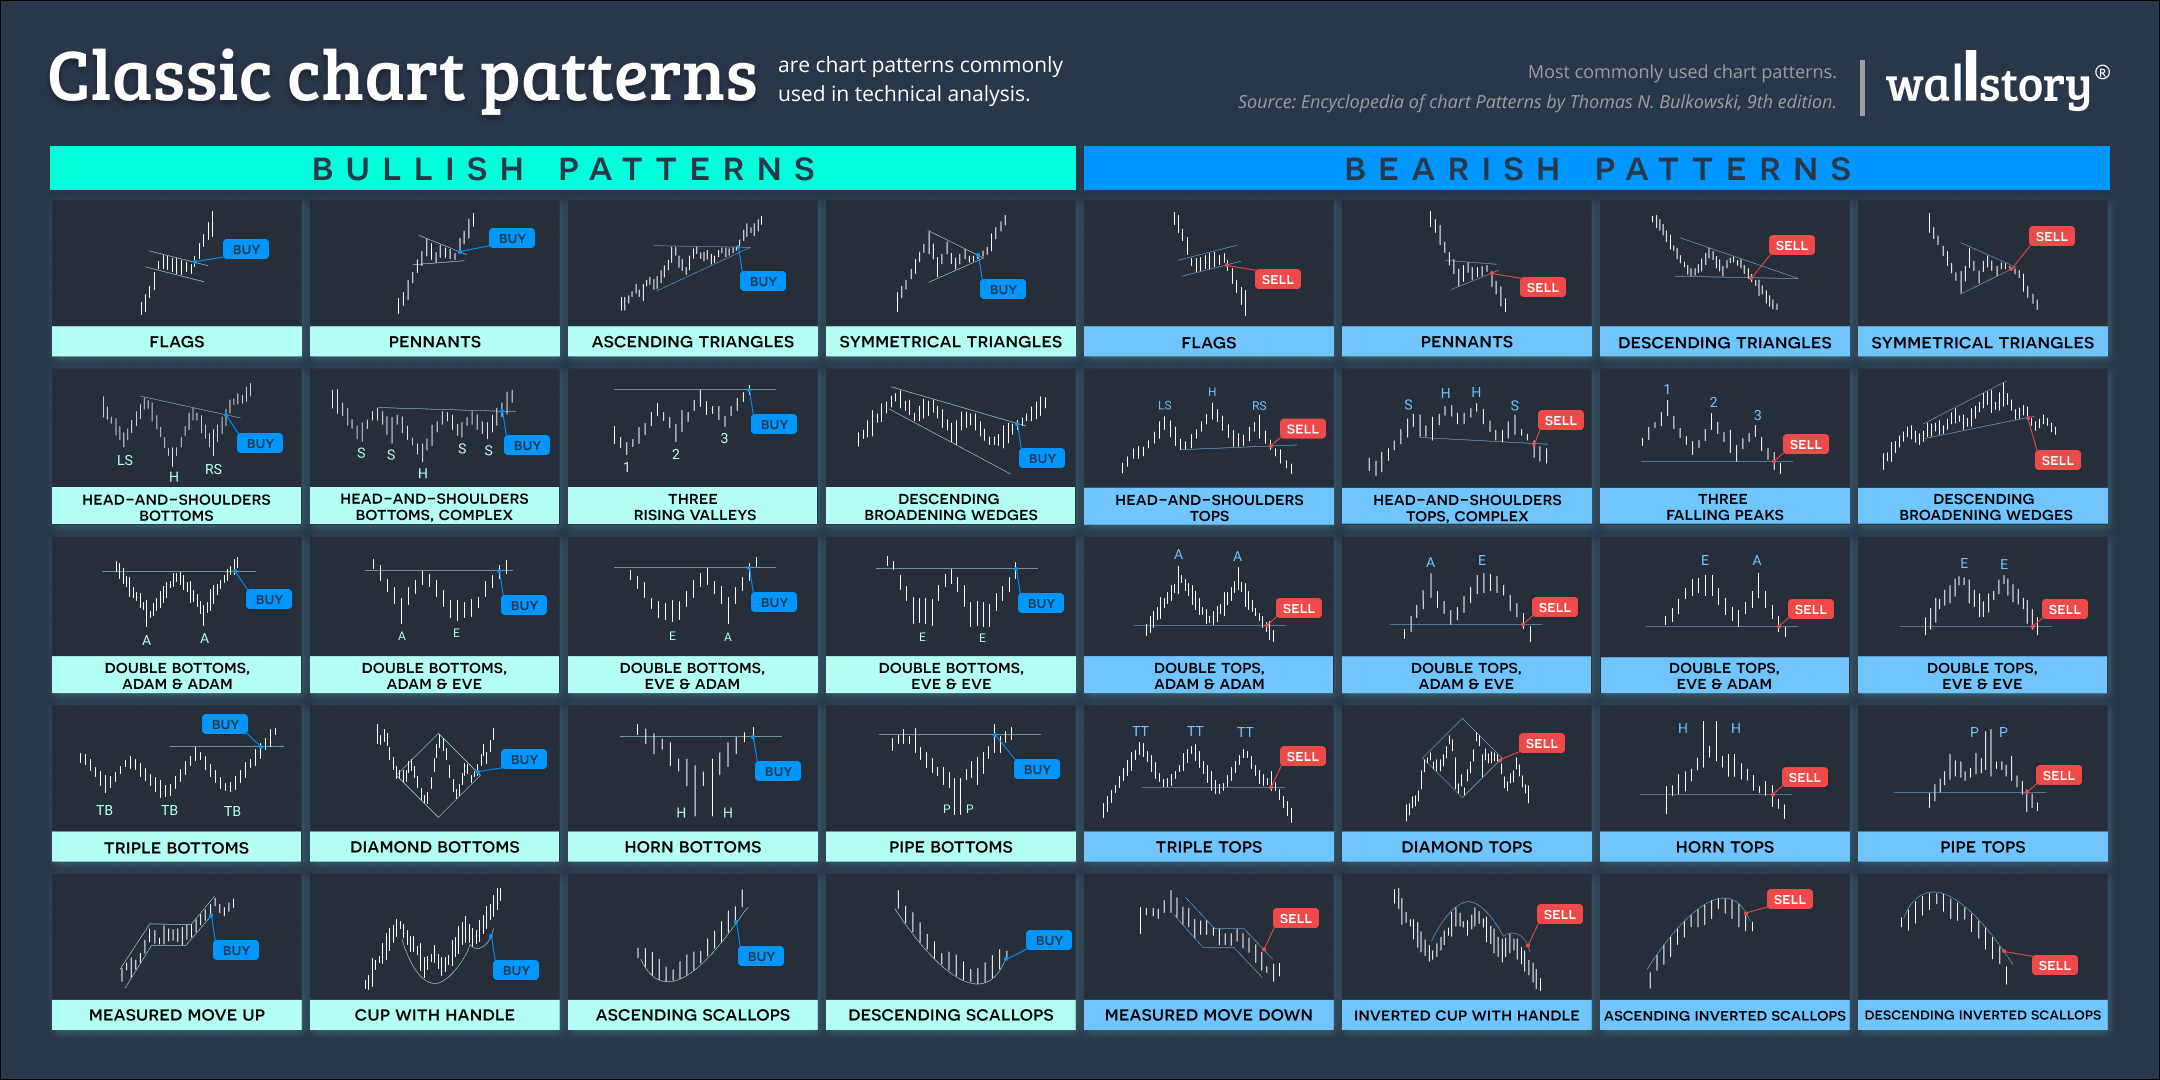 Classic chart patterns